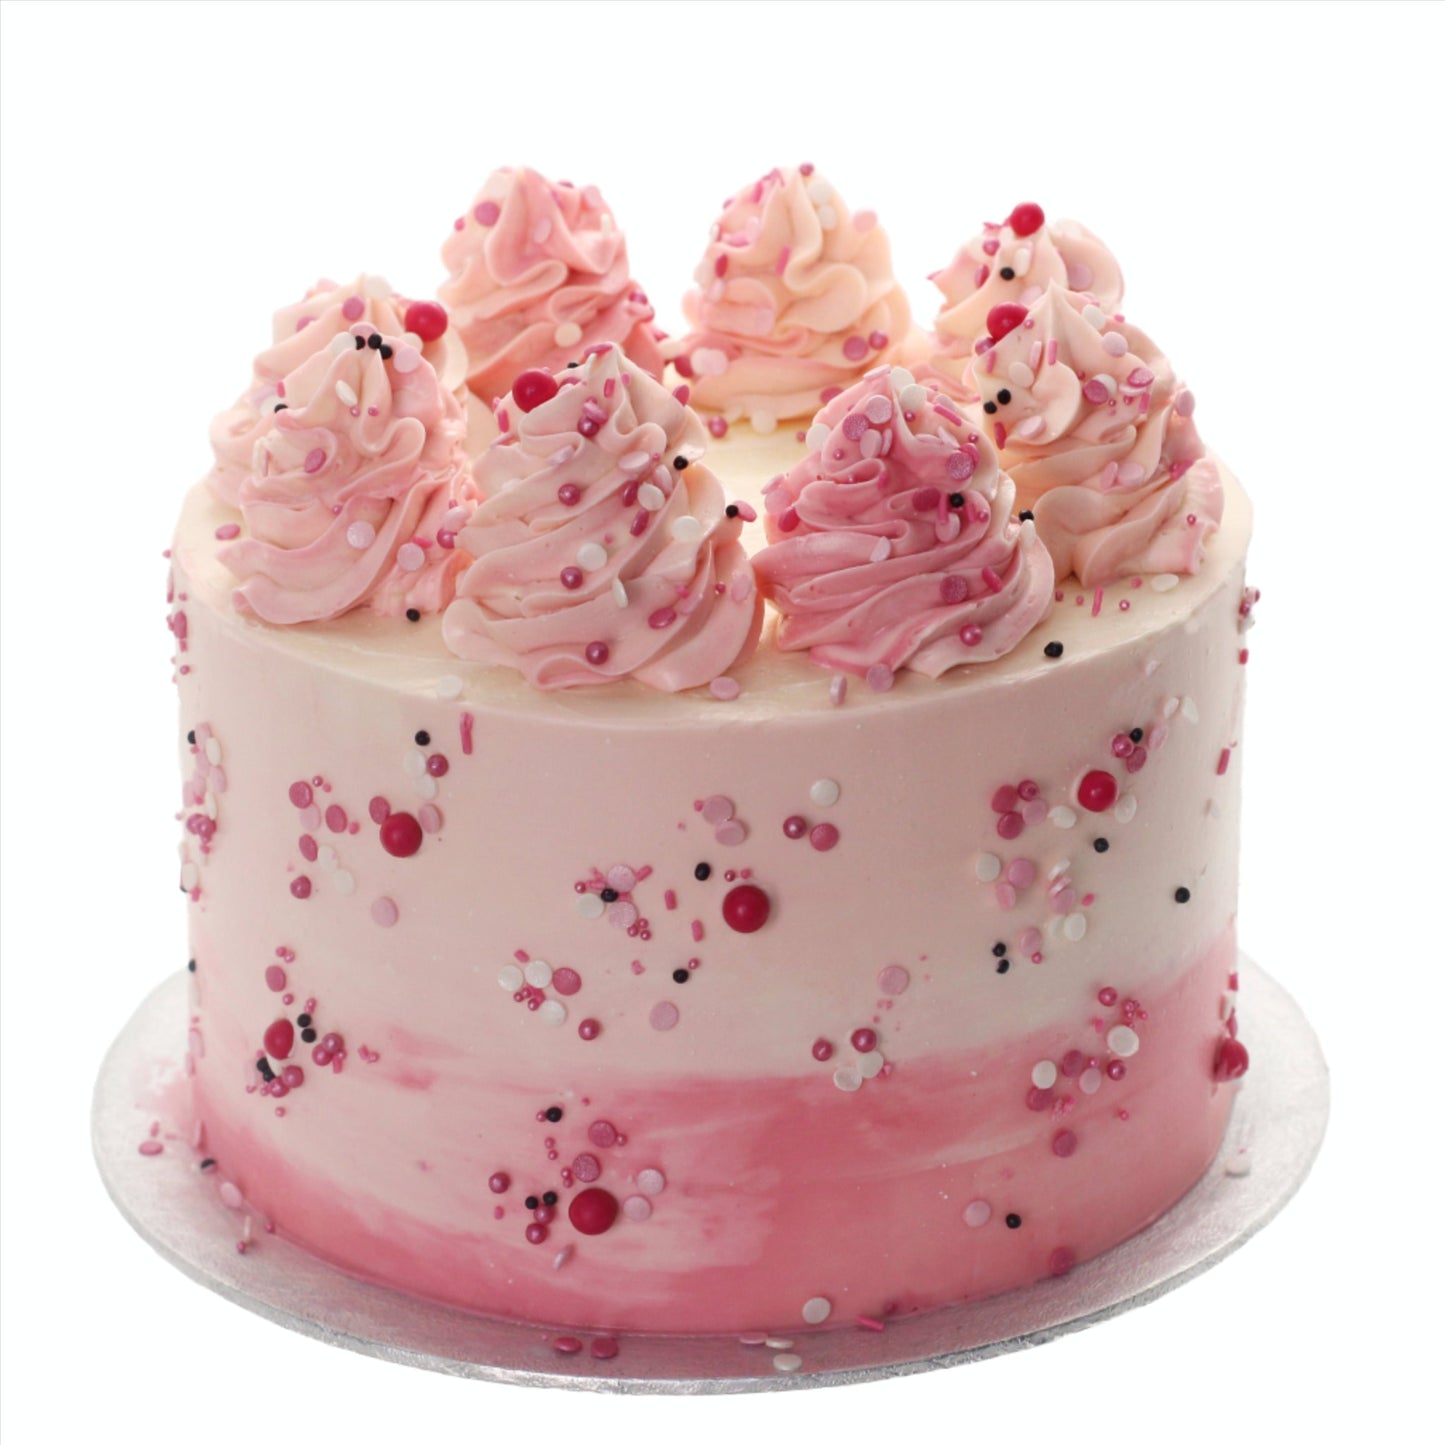 taart verjaardagstaart sprinkles bezorgen bestellen bakkerij Zeist Utrecht Driebergen geboorte baby shower odijk doorn